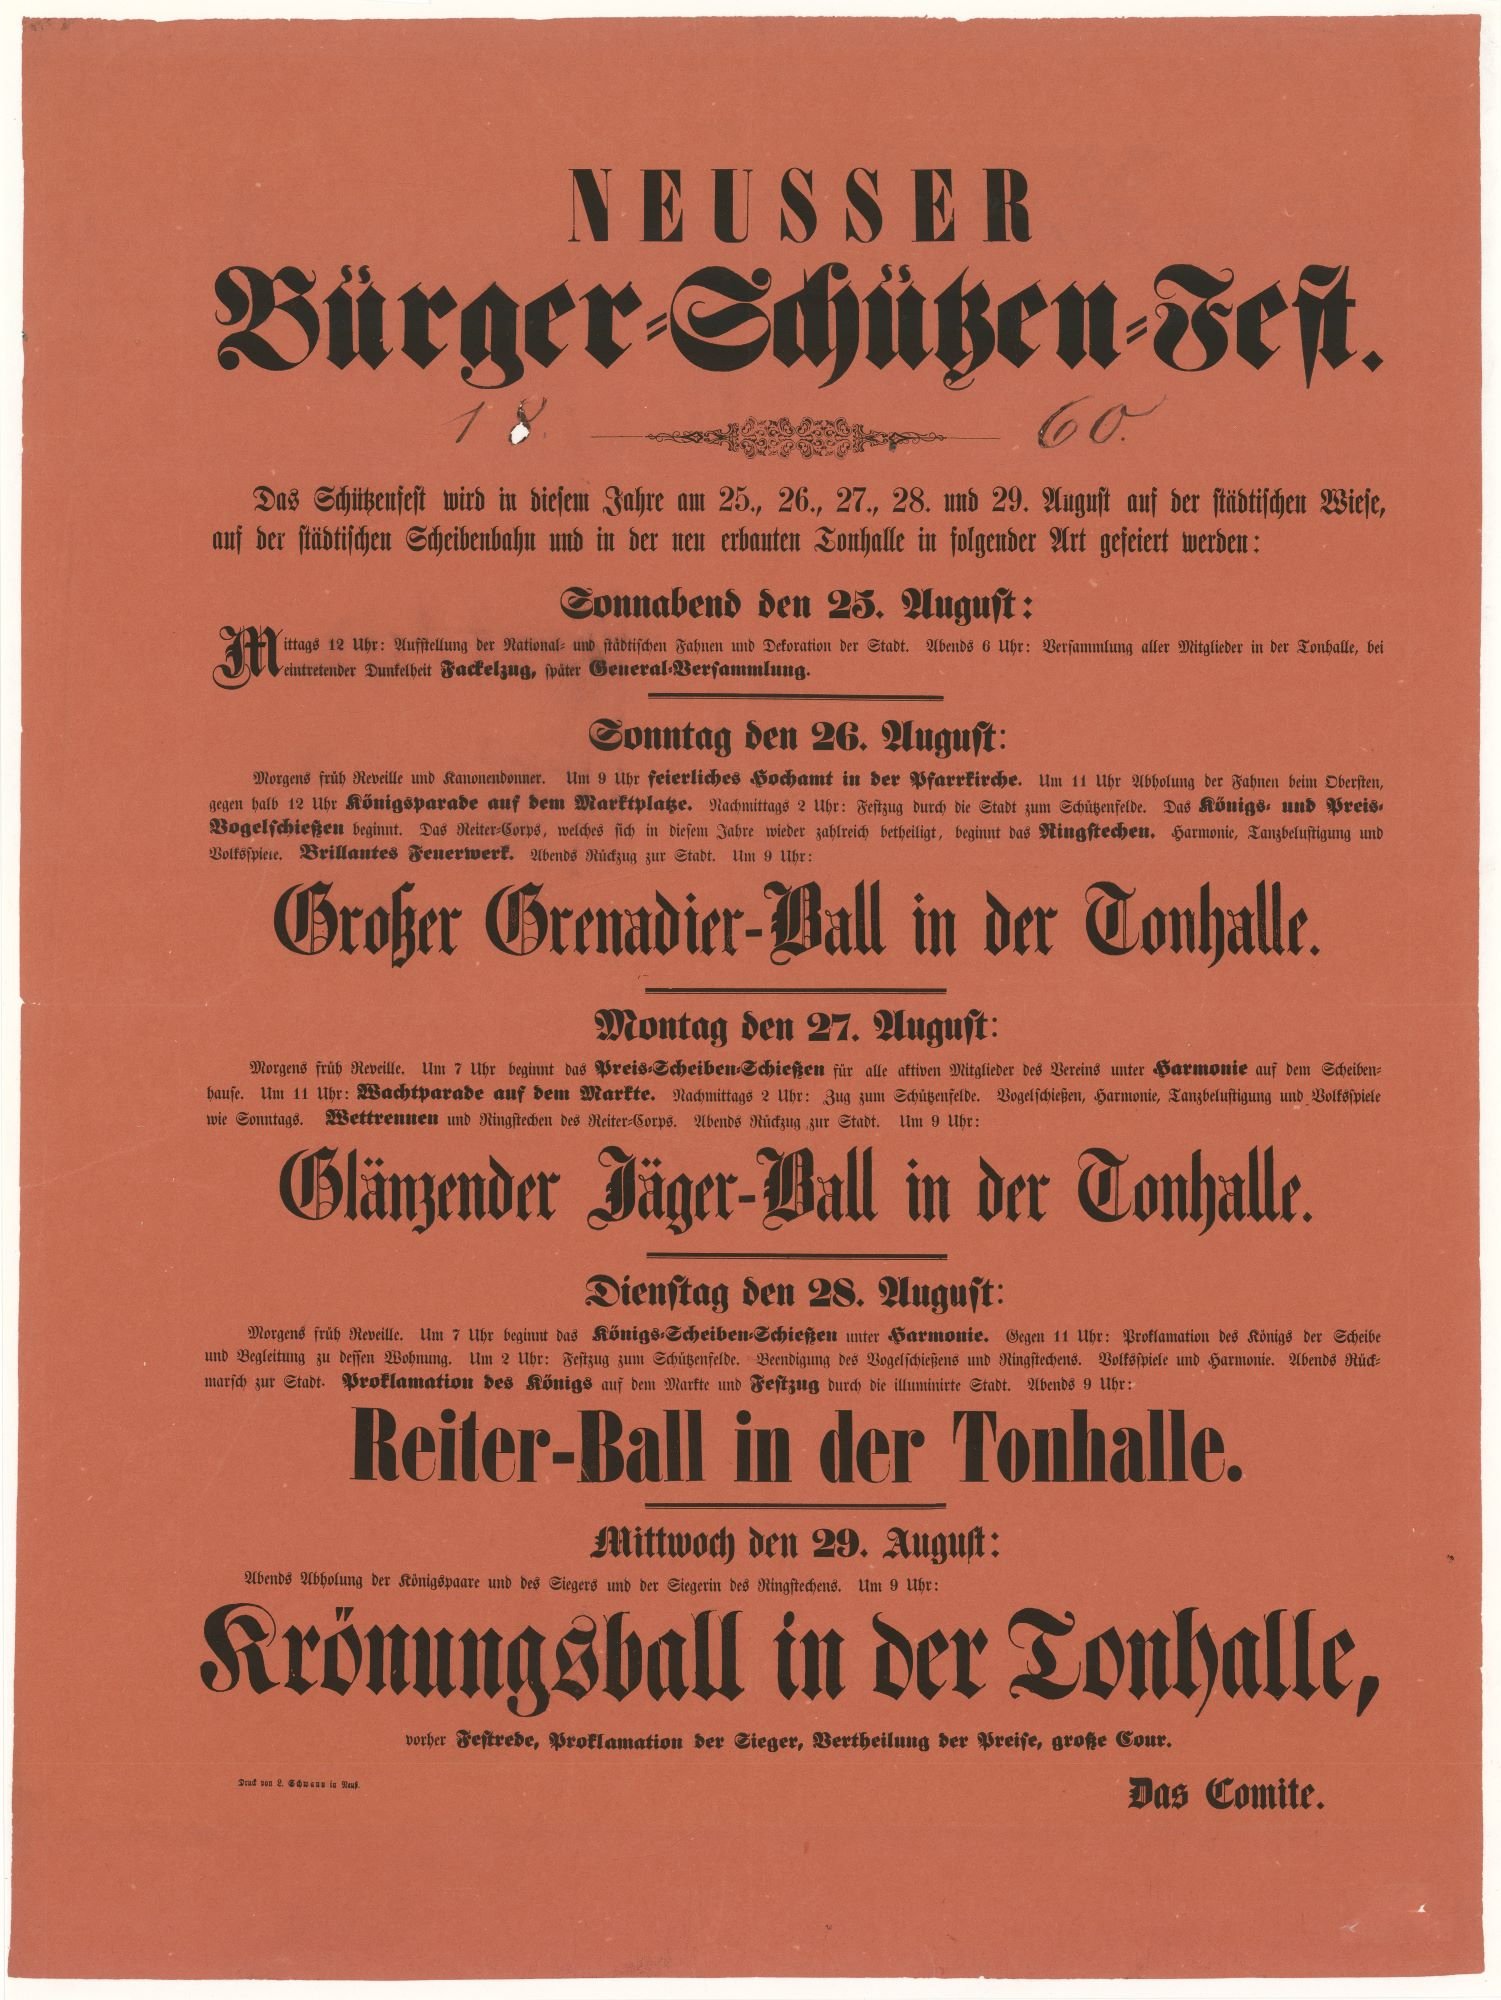 Festplakat Schützenfest 1860 (Rheinisches Schützenmuseum Neuss CC BY-NC-SA)